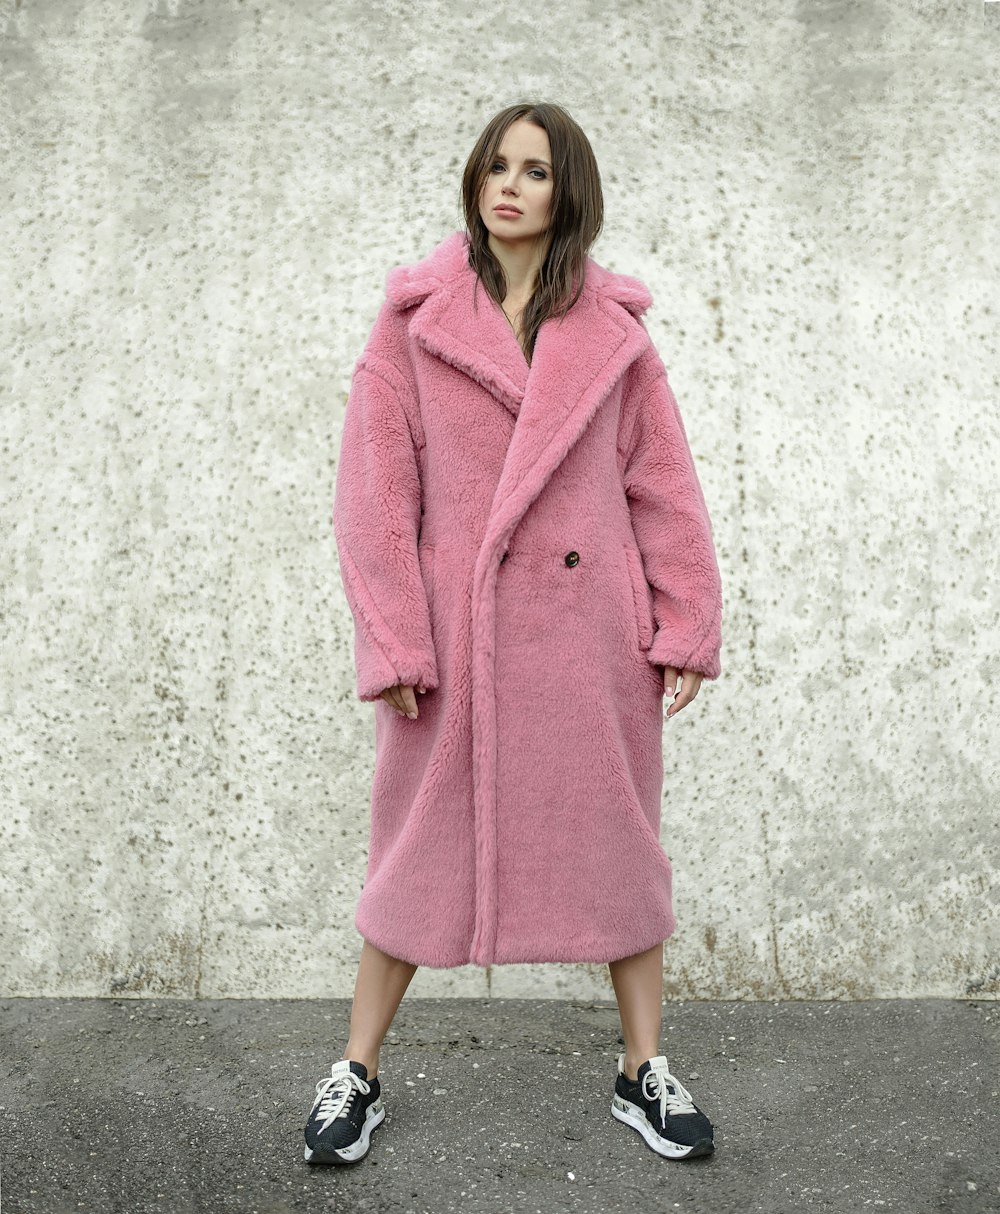 핑크 코트를 입고 서 있는 여자